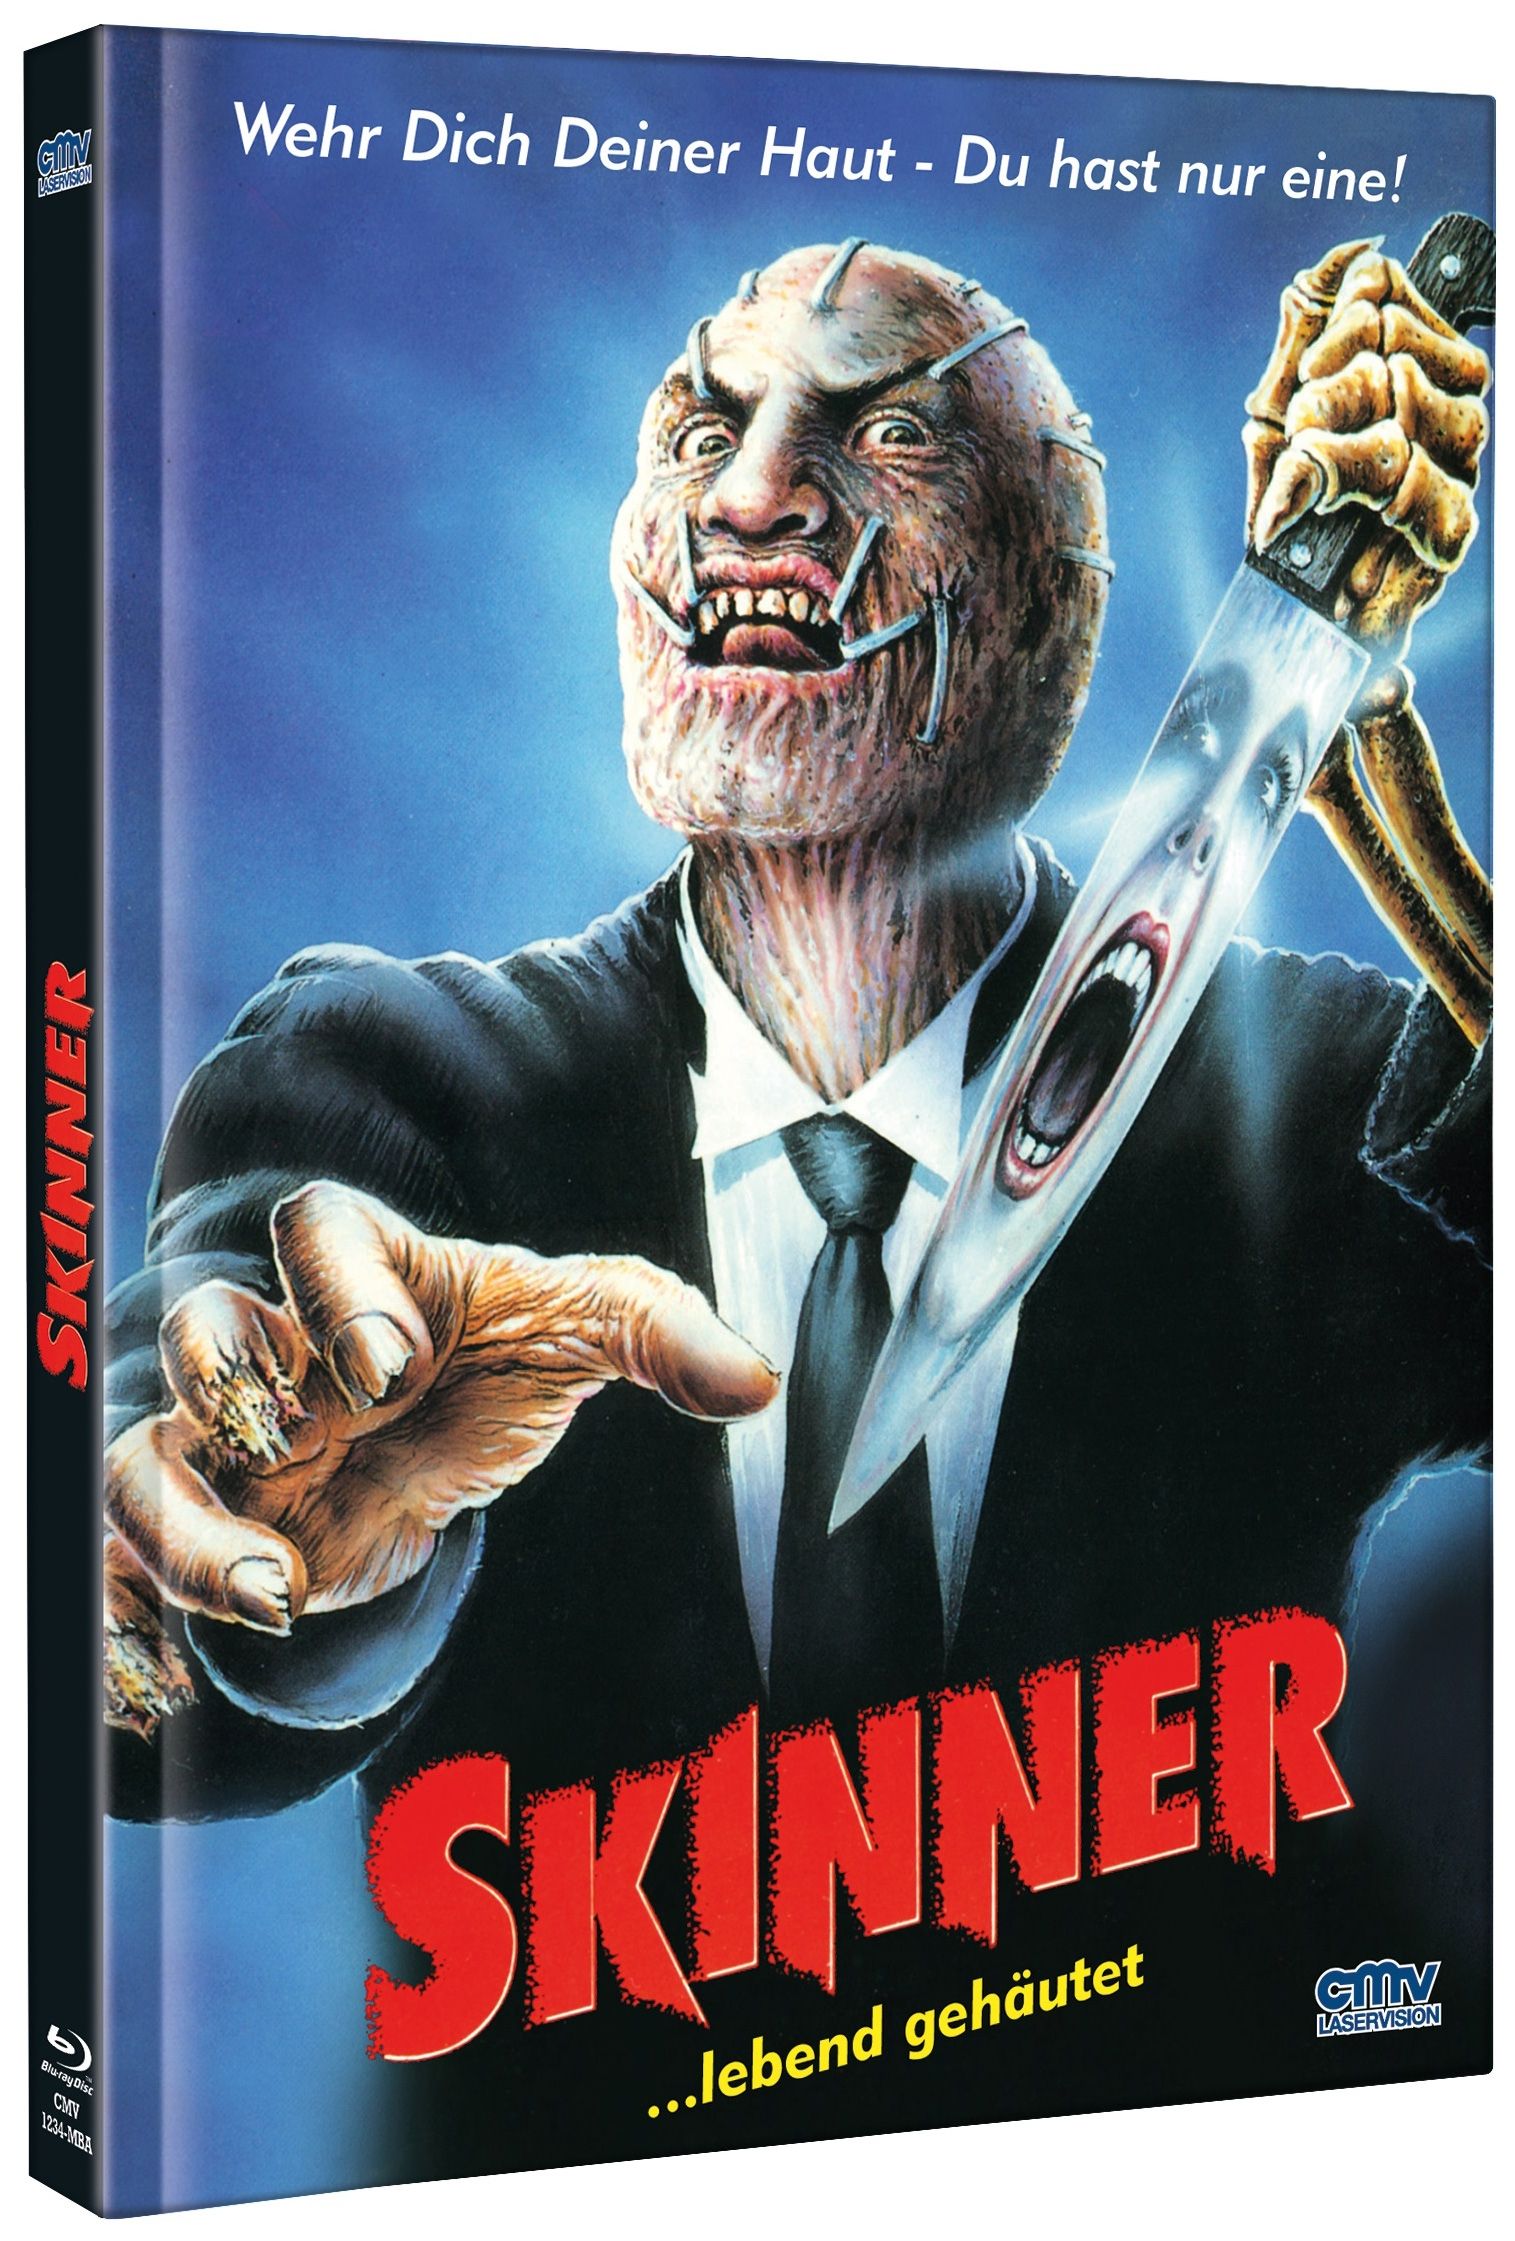 Skinner ...lebend gehäutet (Lim. Uncut Mediabook - Cover A) (DVD + BLURAY)